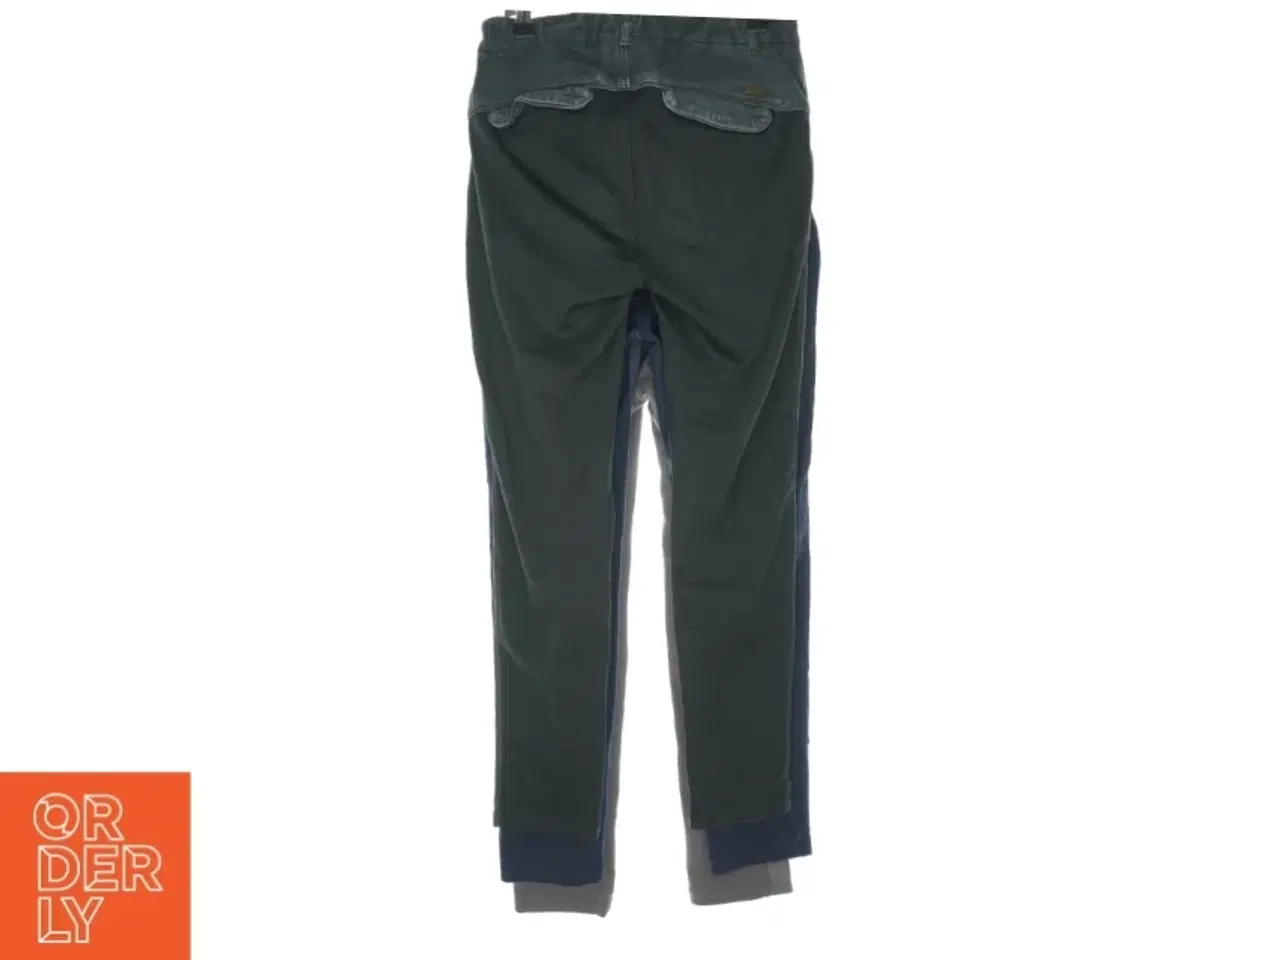 Billede 2 - 3 par bukser fra Pomp de Lux (str. 152 cm)